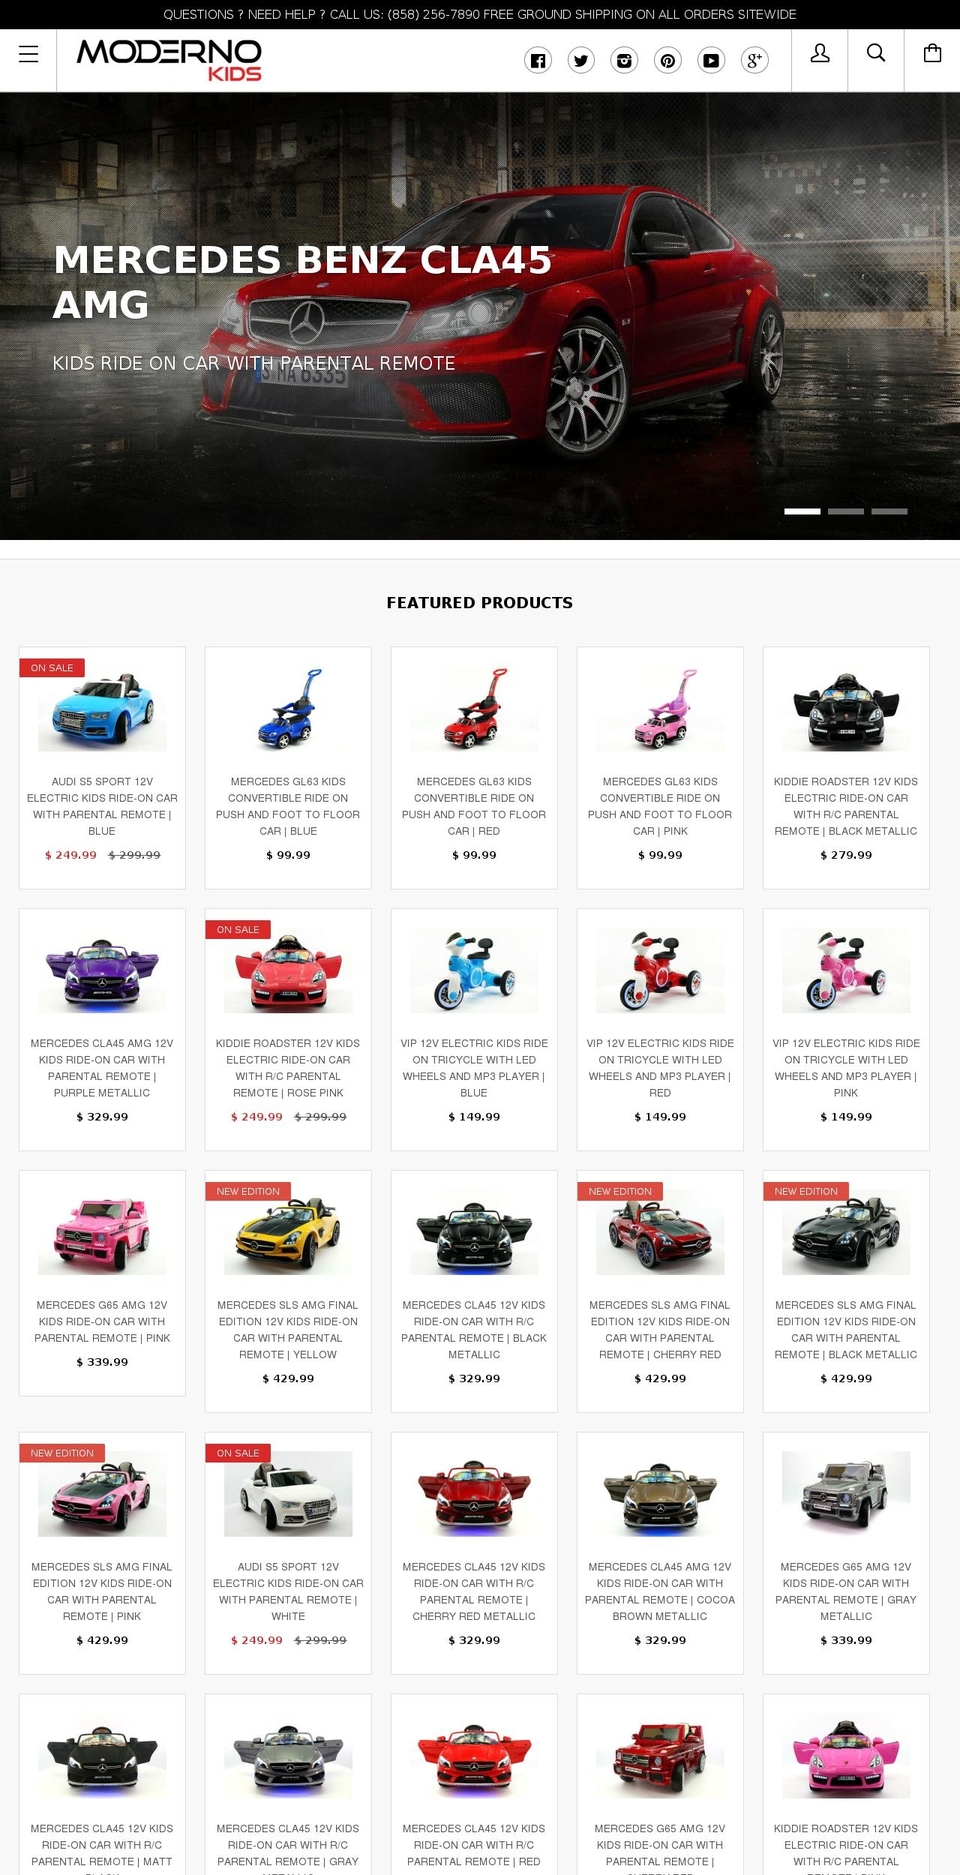 Kagami Shopify theme site example modernokids.com